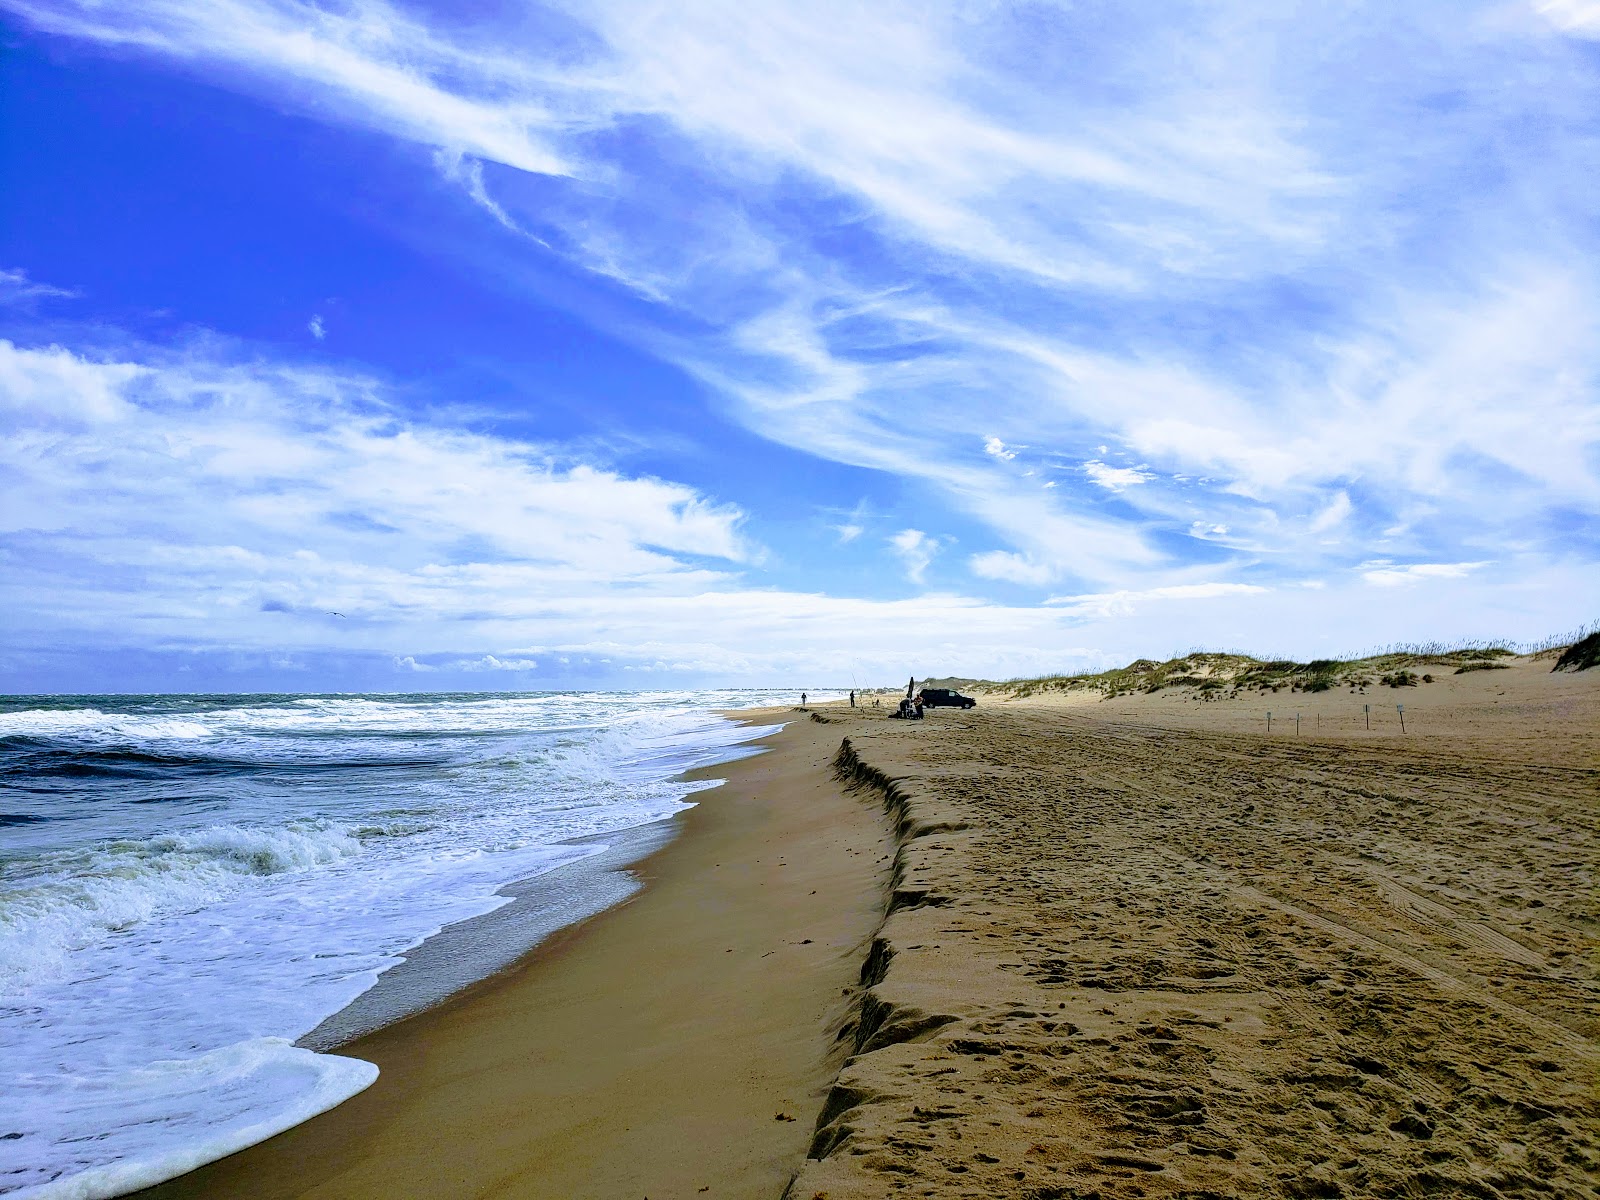 Zdjęcie Cape Hatteras beach z powierzchnią jasny piasek